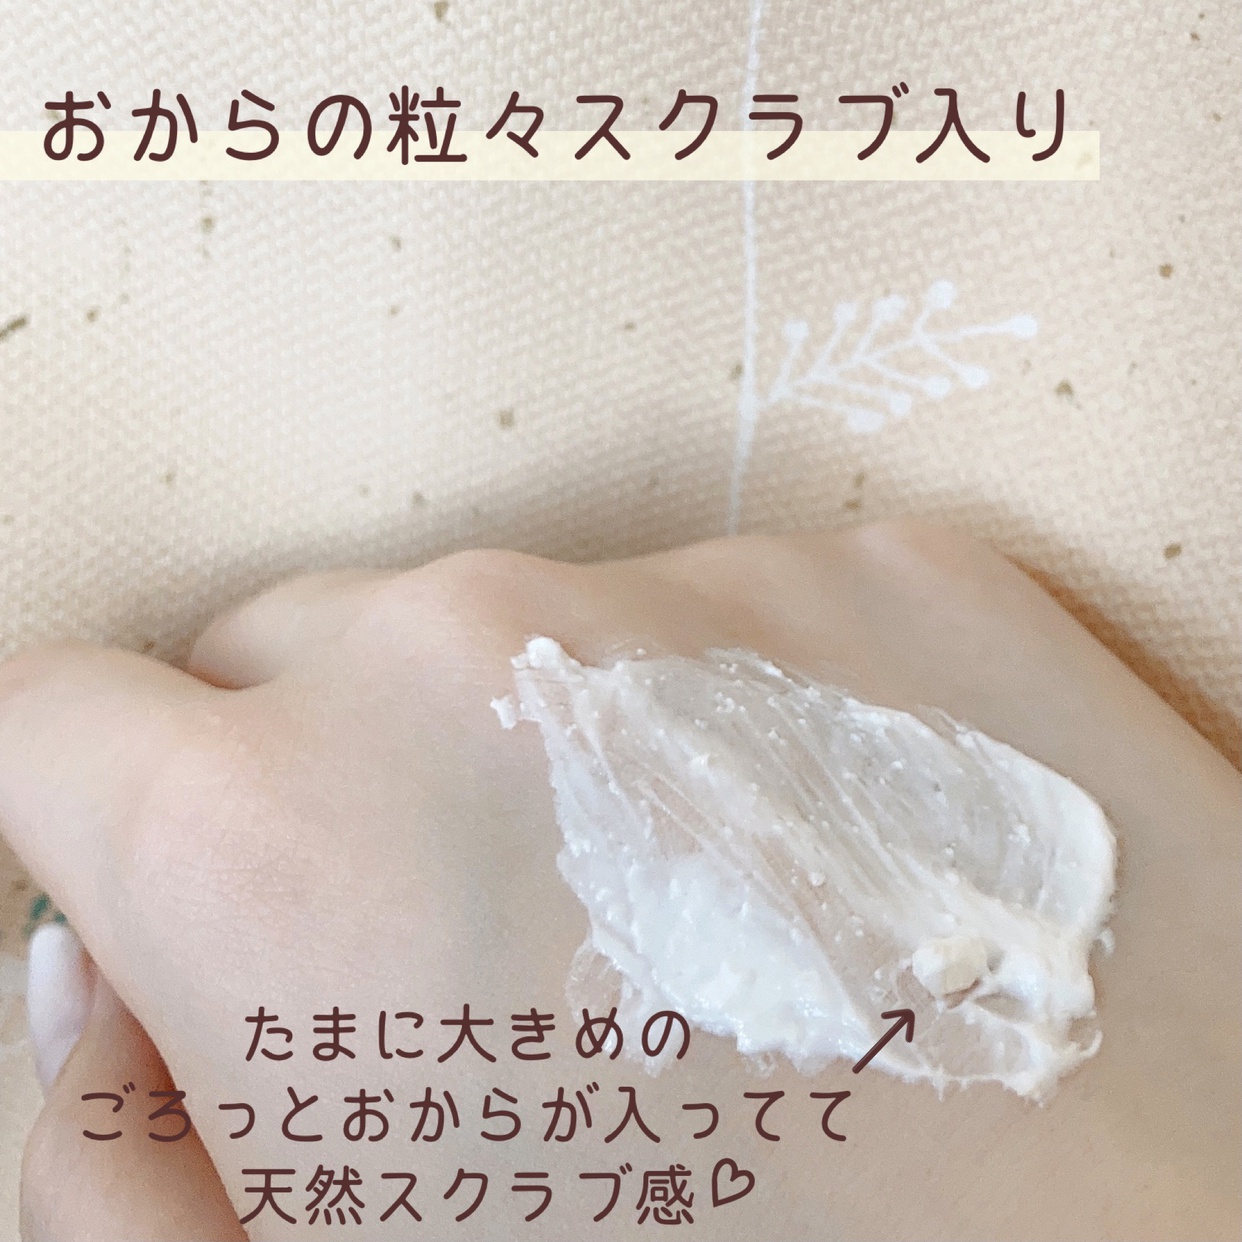 愛しとーと 五ヶ山豆腐 塗るパックに関するsatomiさんの口コミ画像2